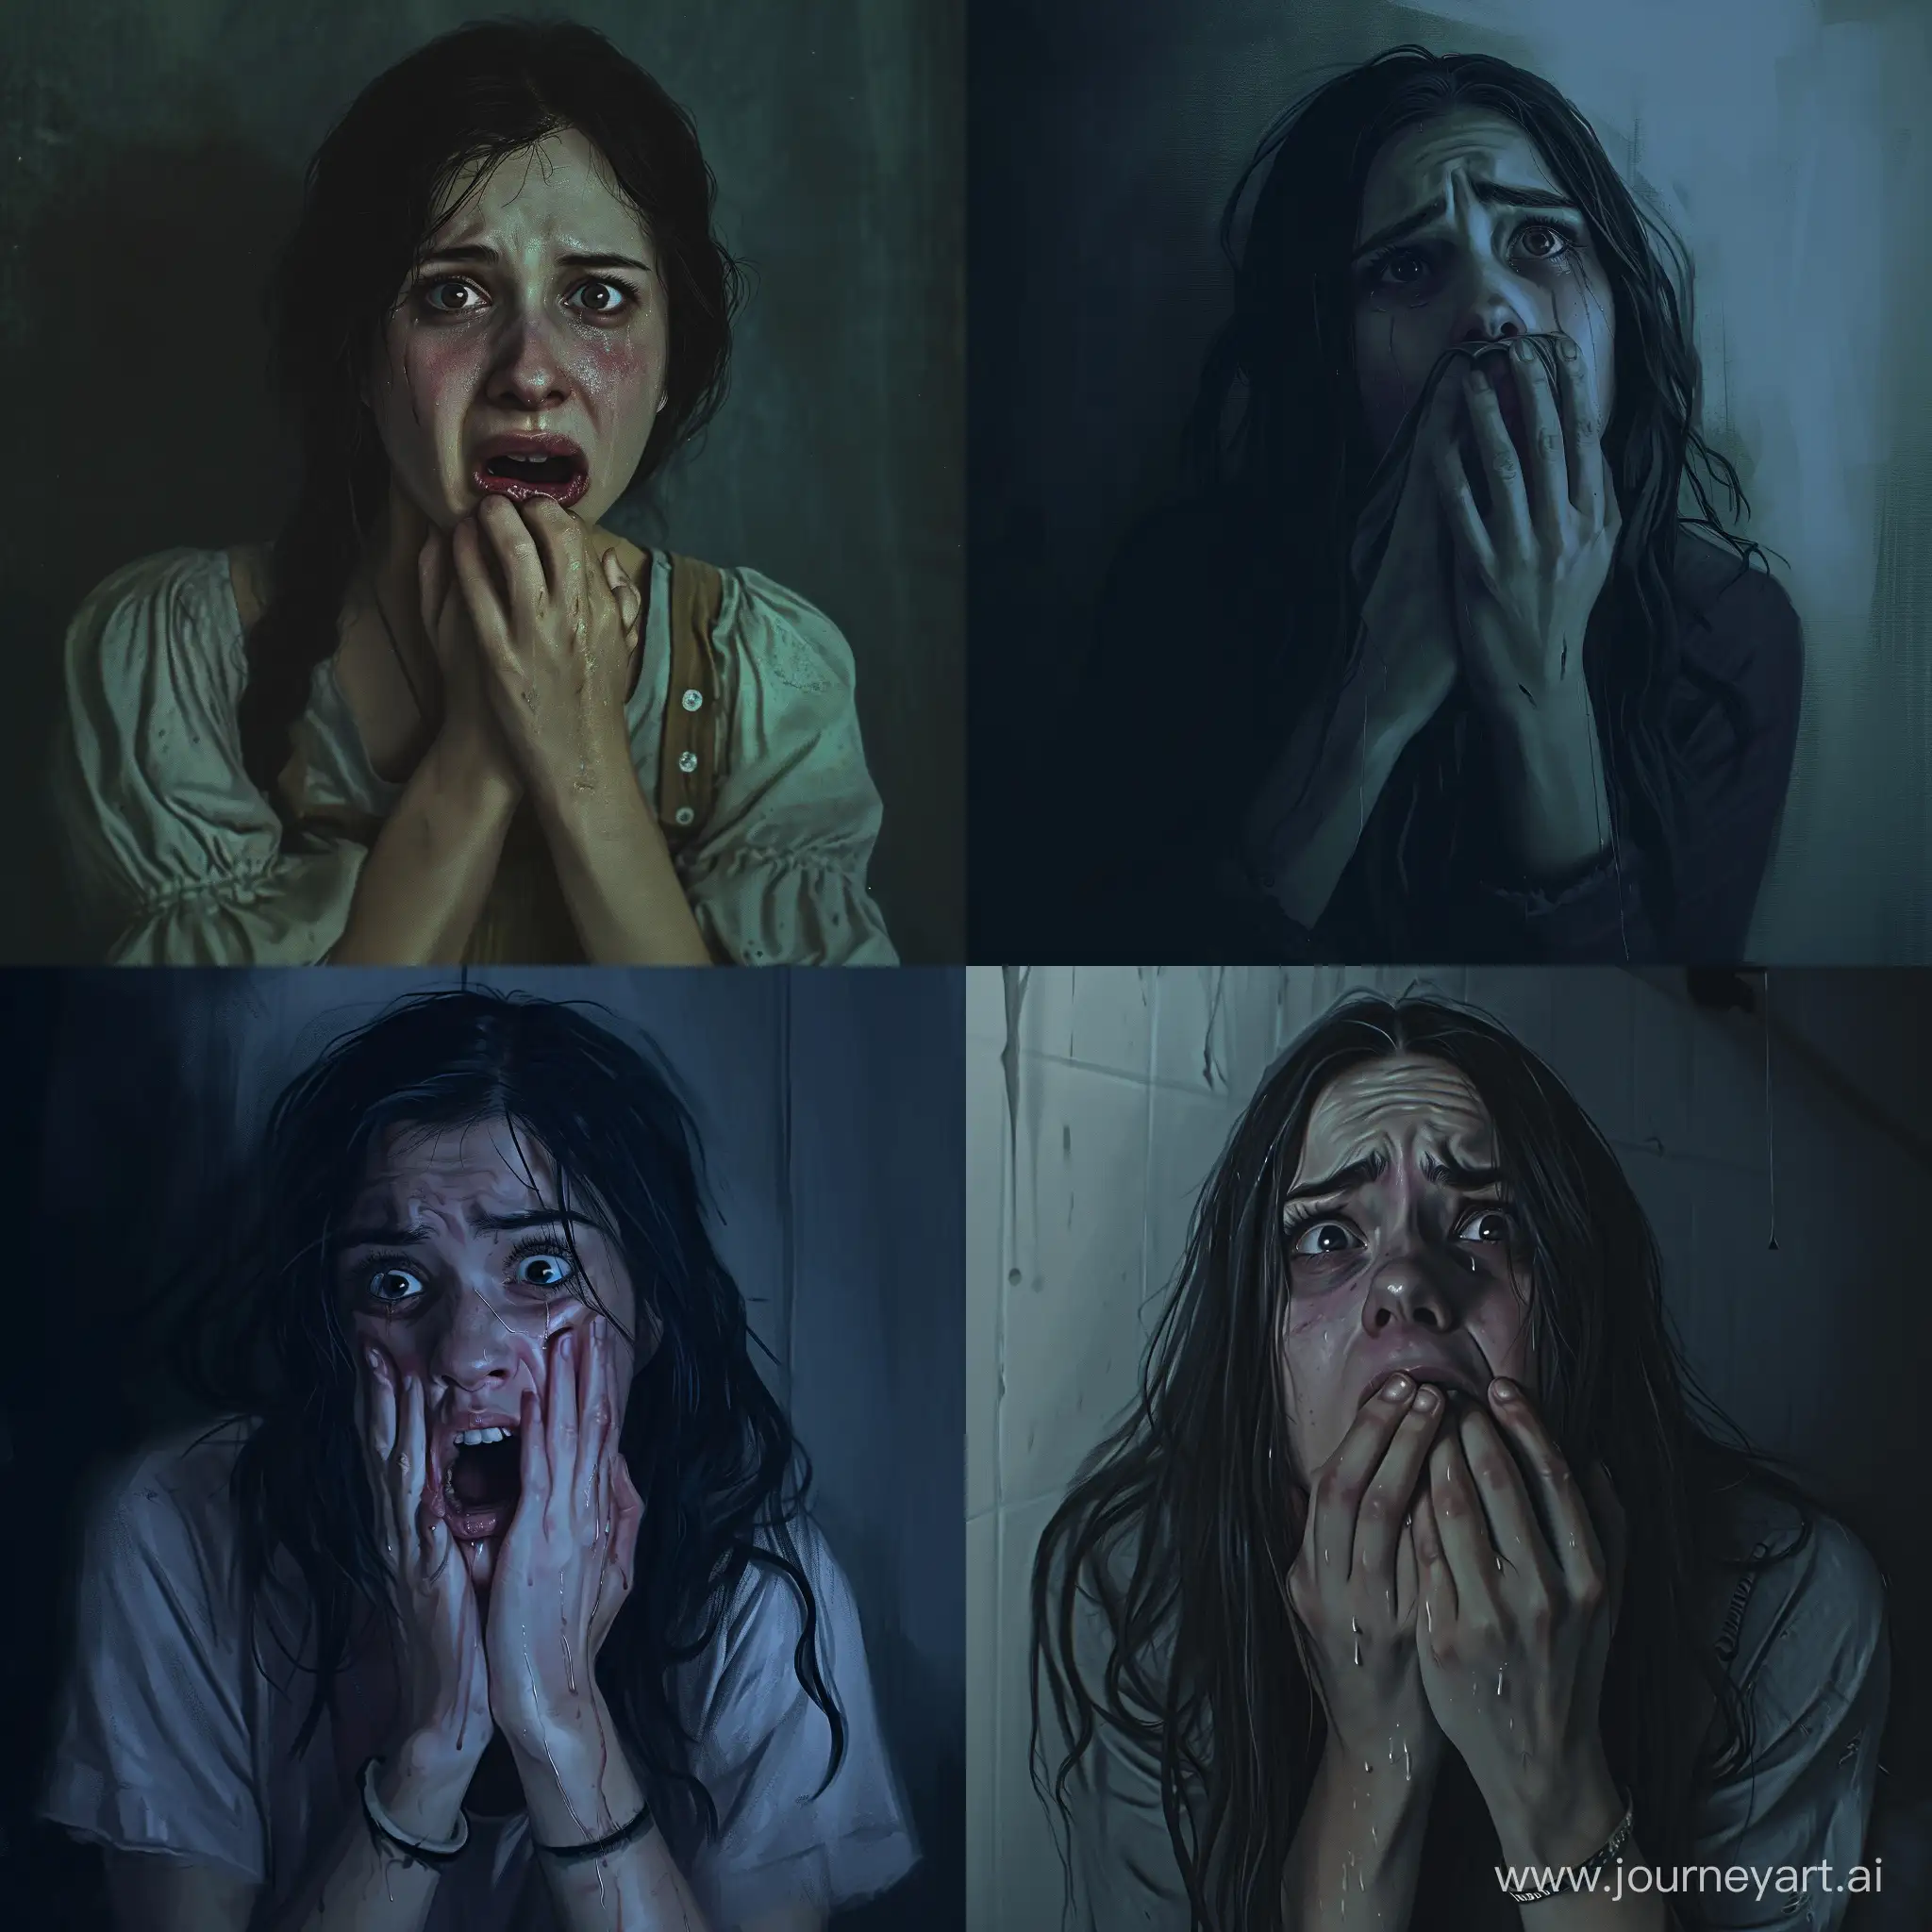 Fearful-Woman-Concealing-in-Digital-Horror-Art